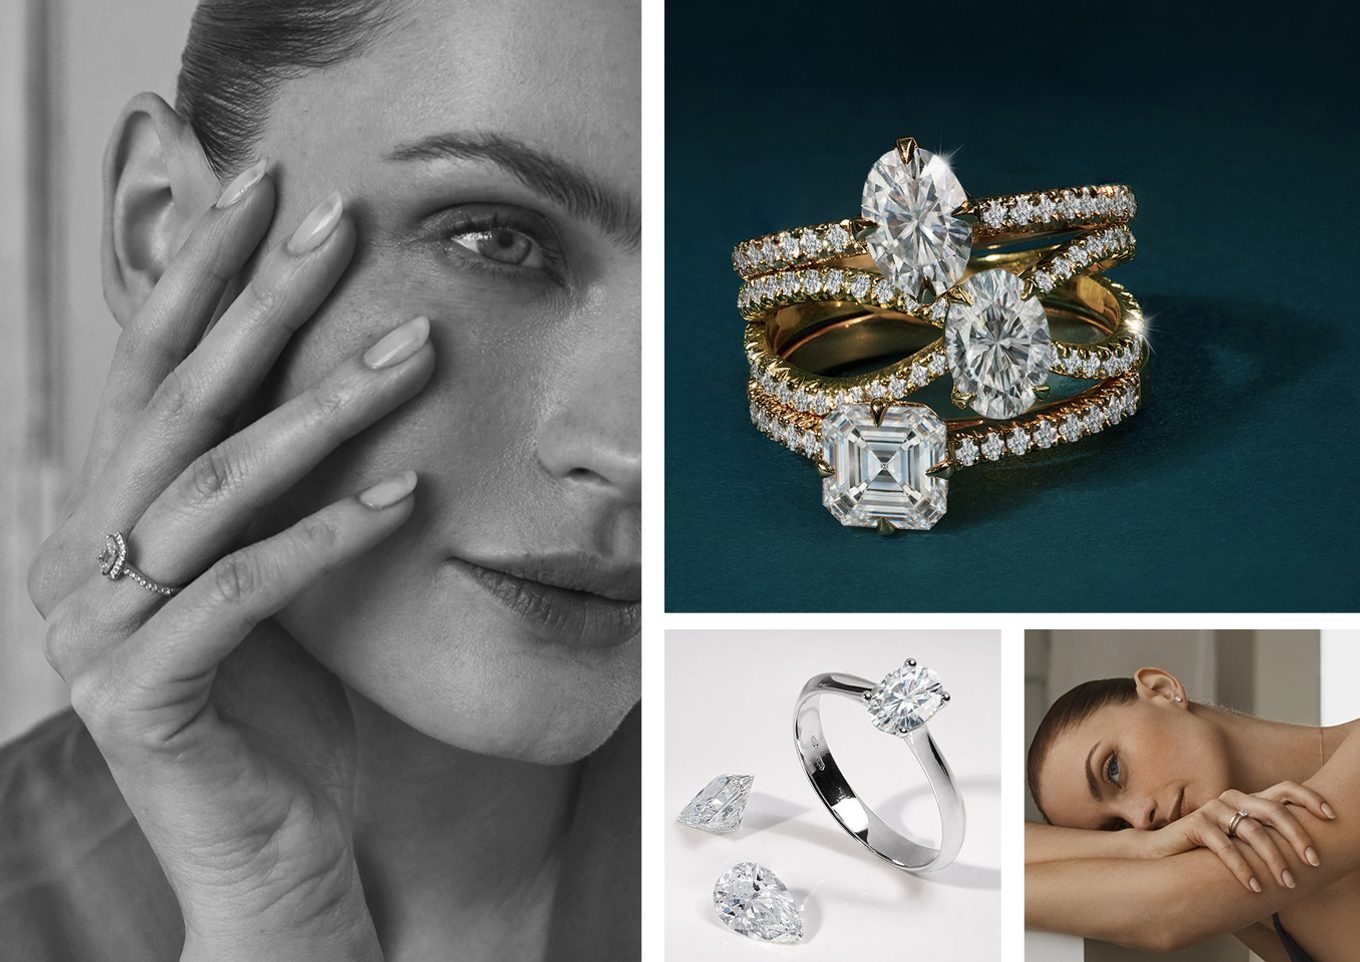 Le Grand - Kollektion von Luxusringen mit im Labor gezüchteten Diamanten - KLENOTA